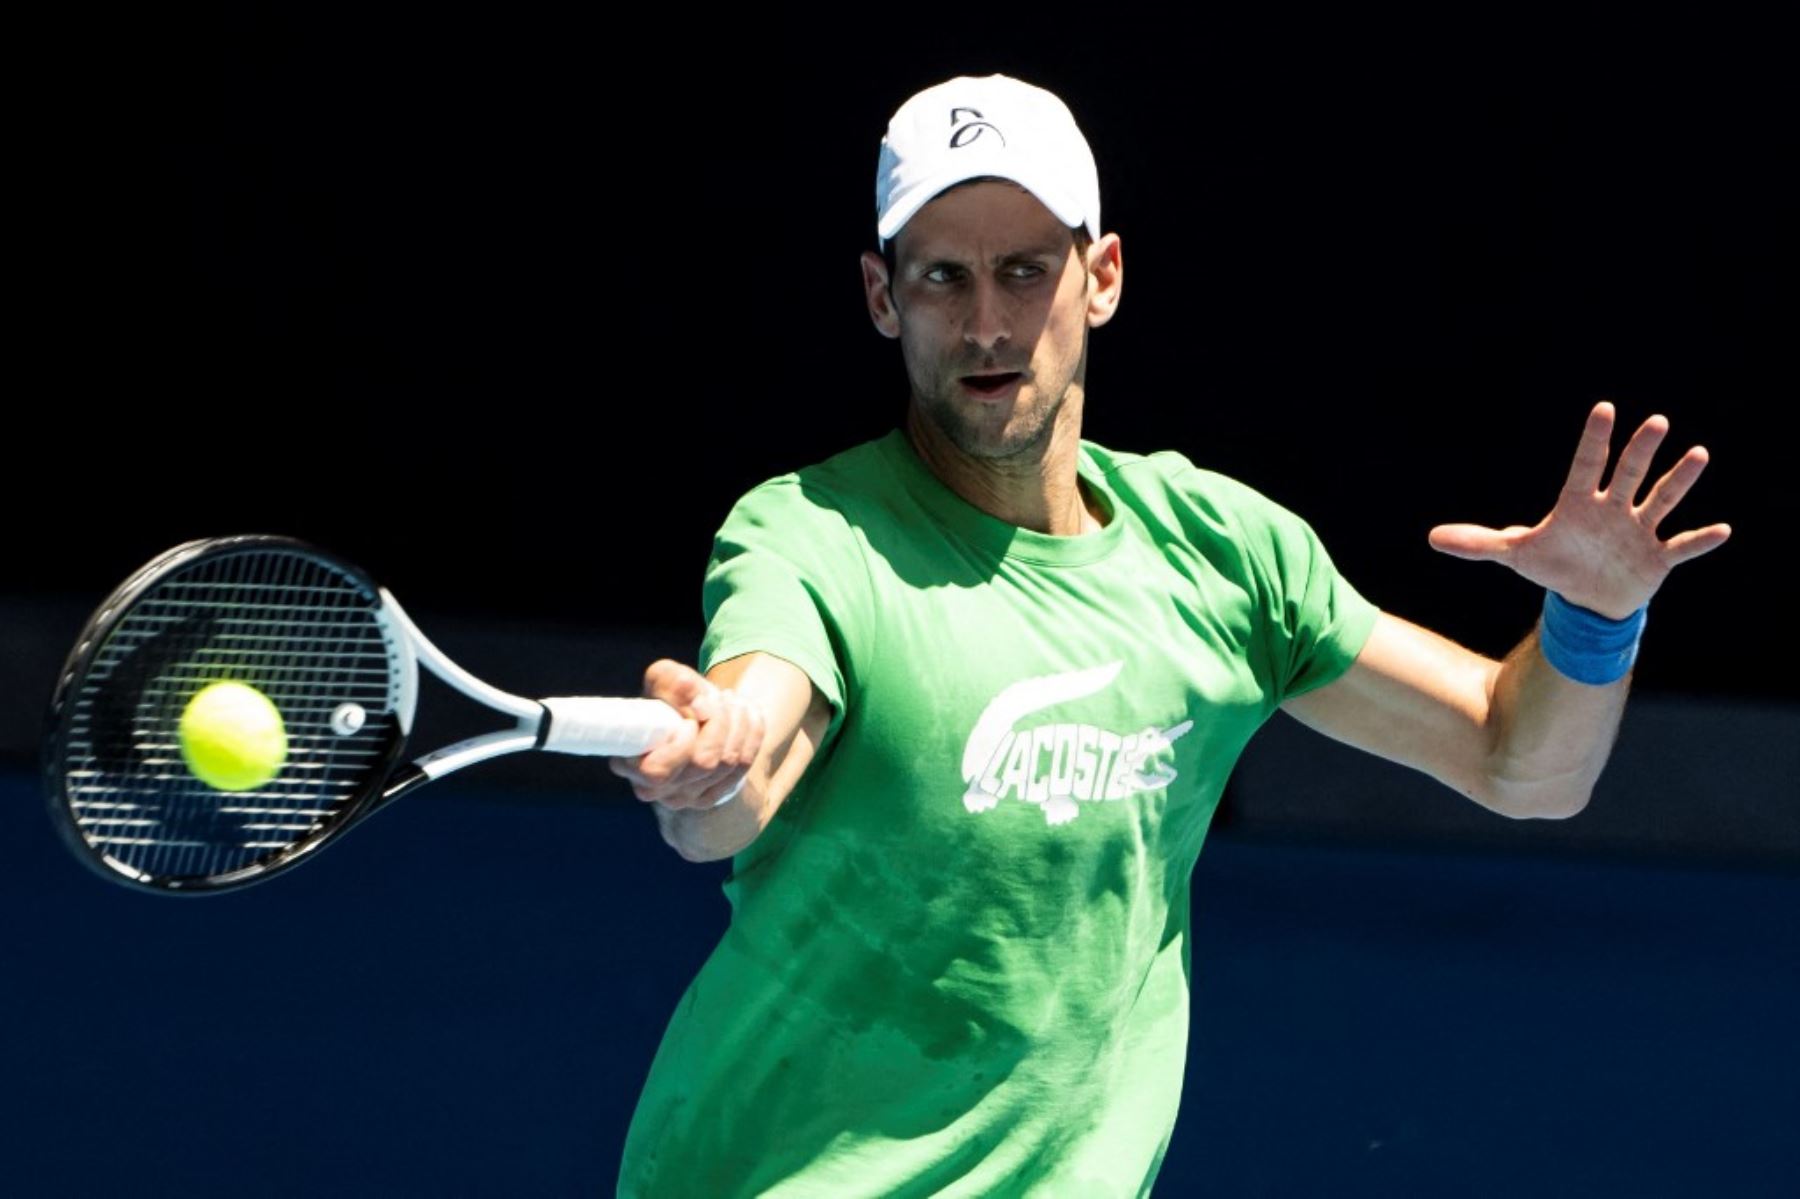 Djokovic tras superar problemas legales fue incluido en el cuadro del Open de Australia